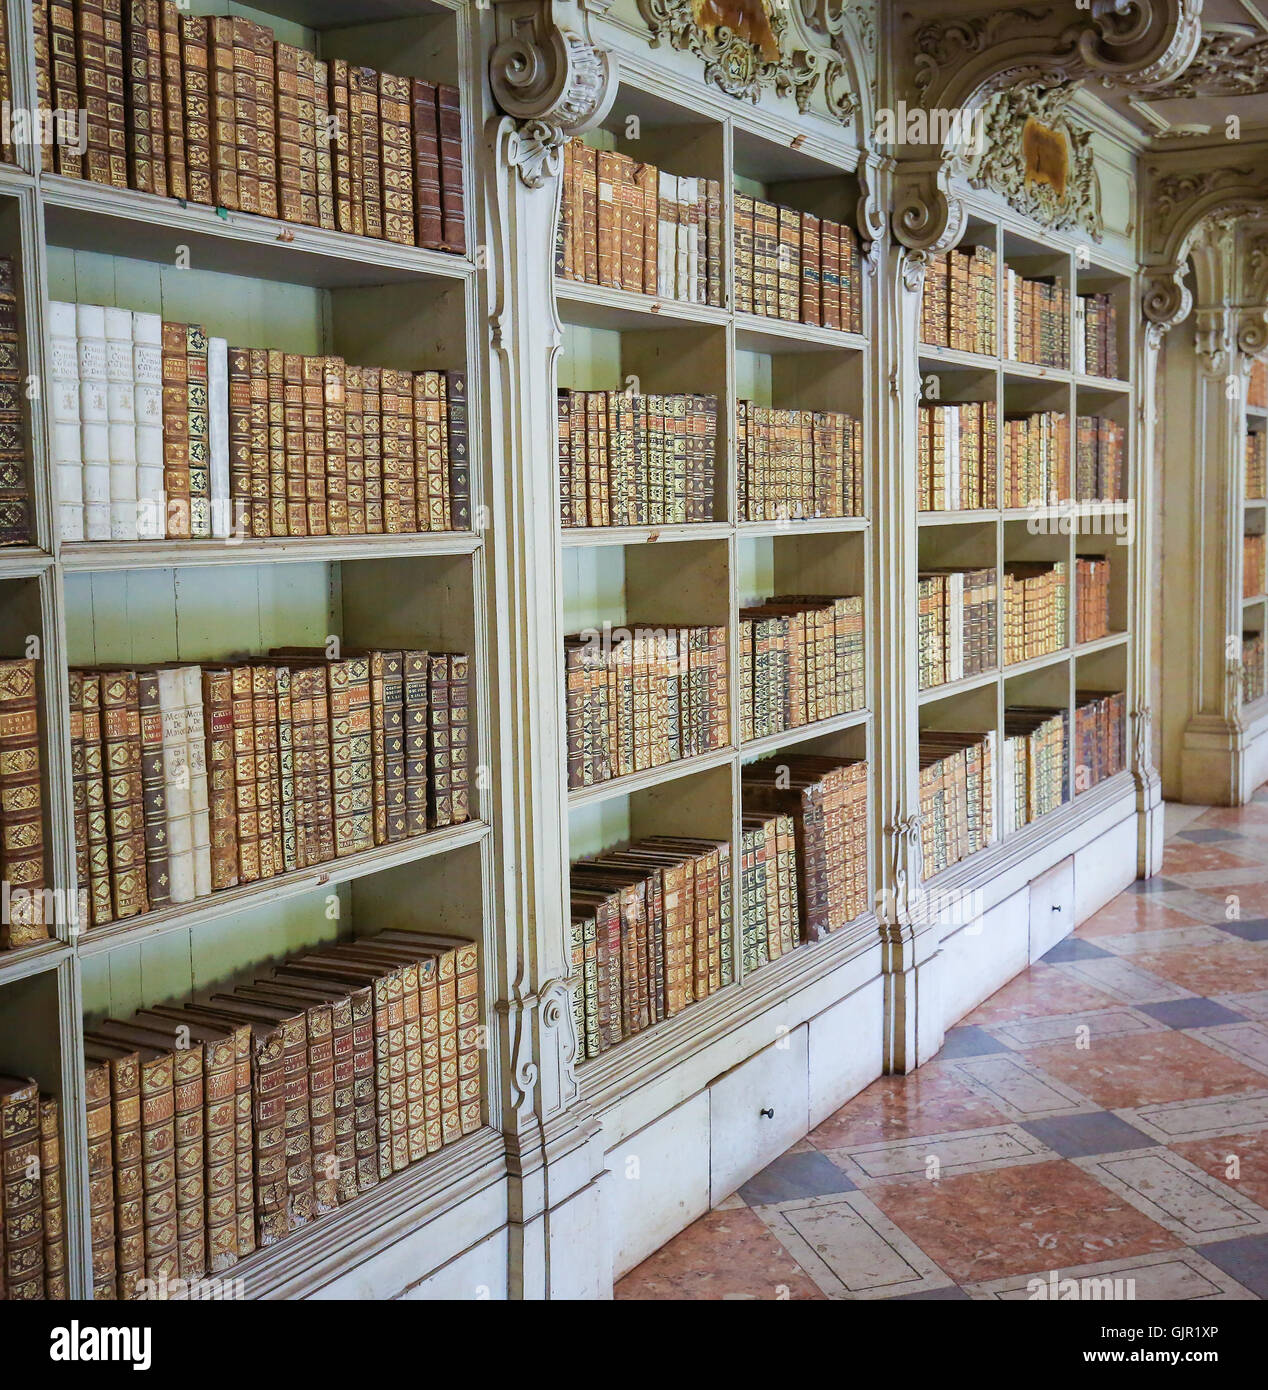 MAFRA, Portugal - Julio 17, 2016: Los libros antiguos de la biblioteca del Palacio de Mafra, Portugal Foto de stock